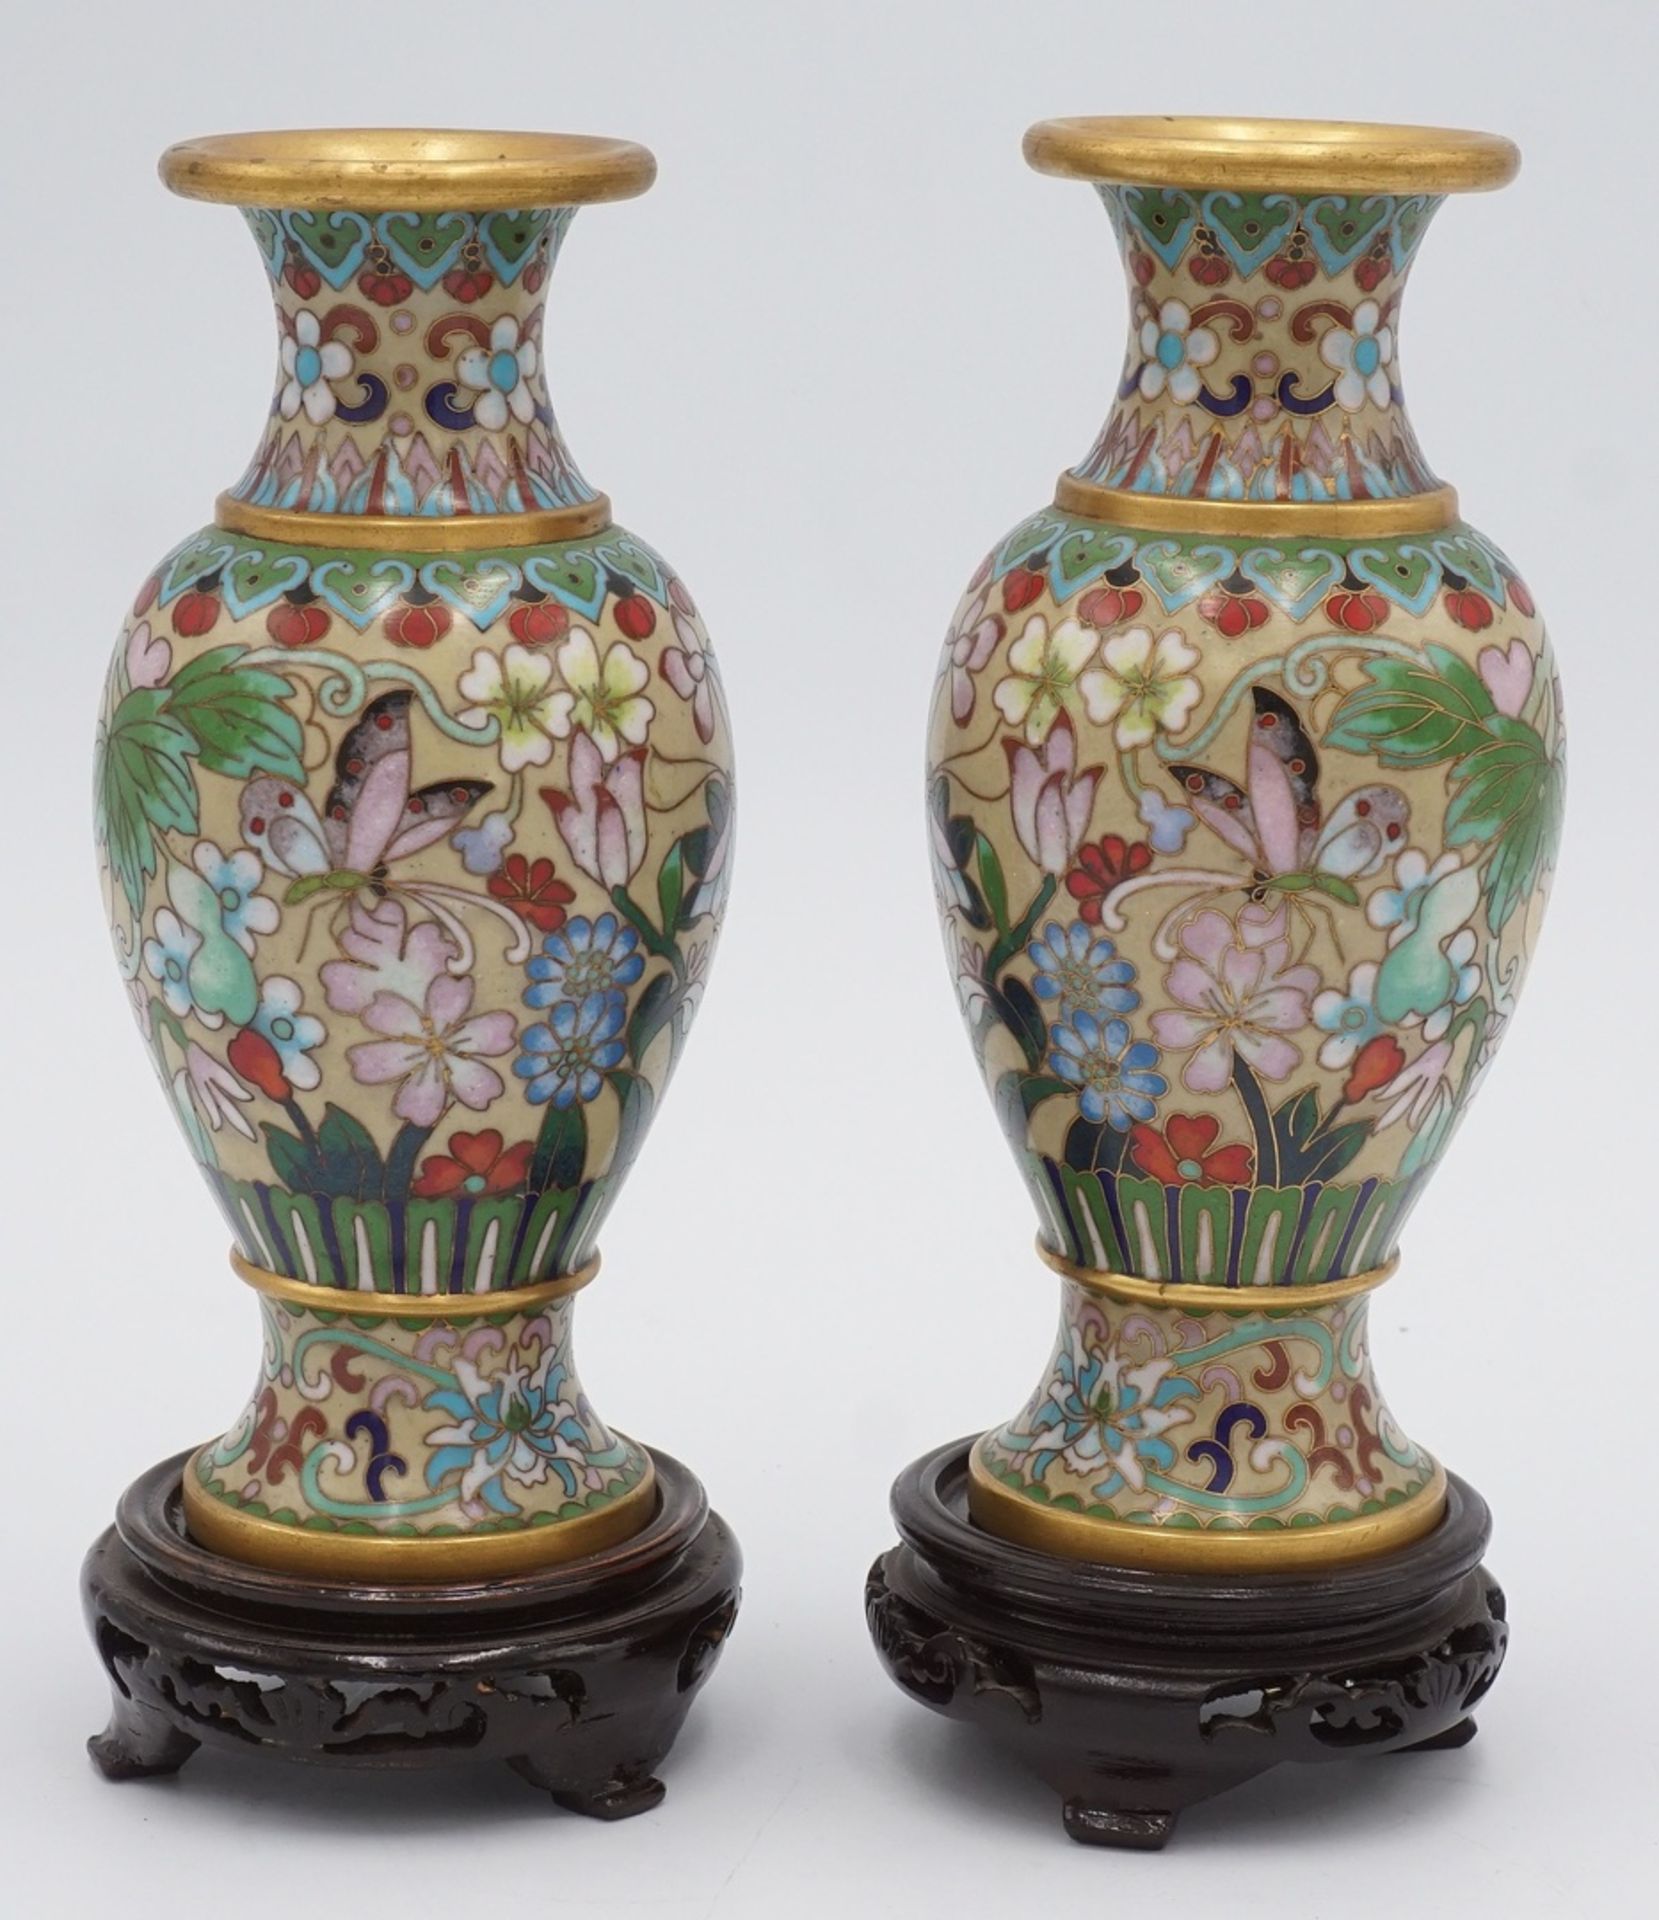 Zwei aufwendig verzierte Cloisonné Vasen, China, 1. Hälfte 20. Jh.Messing mit Emailledekor, mit - Image 2 of 2